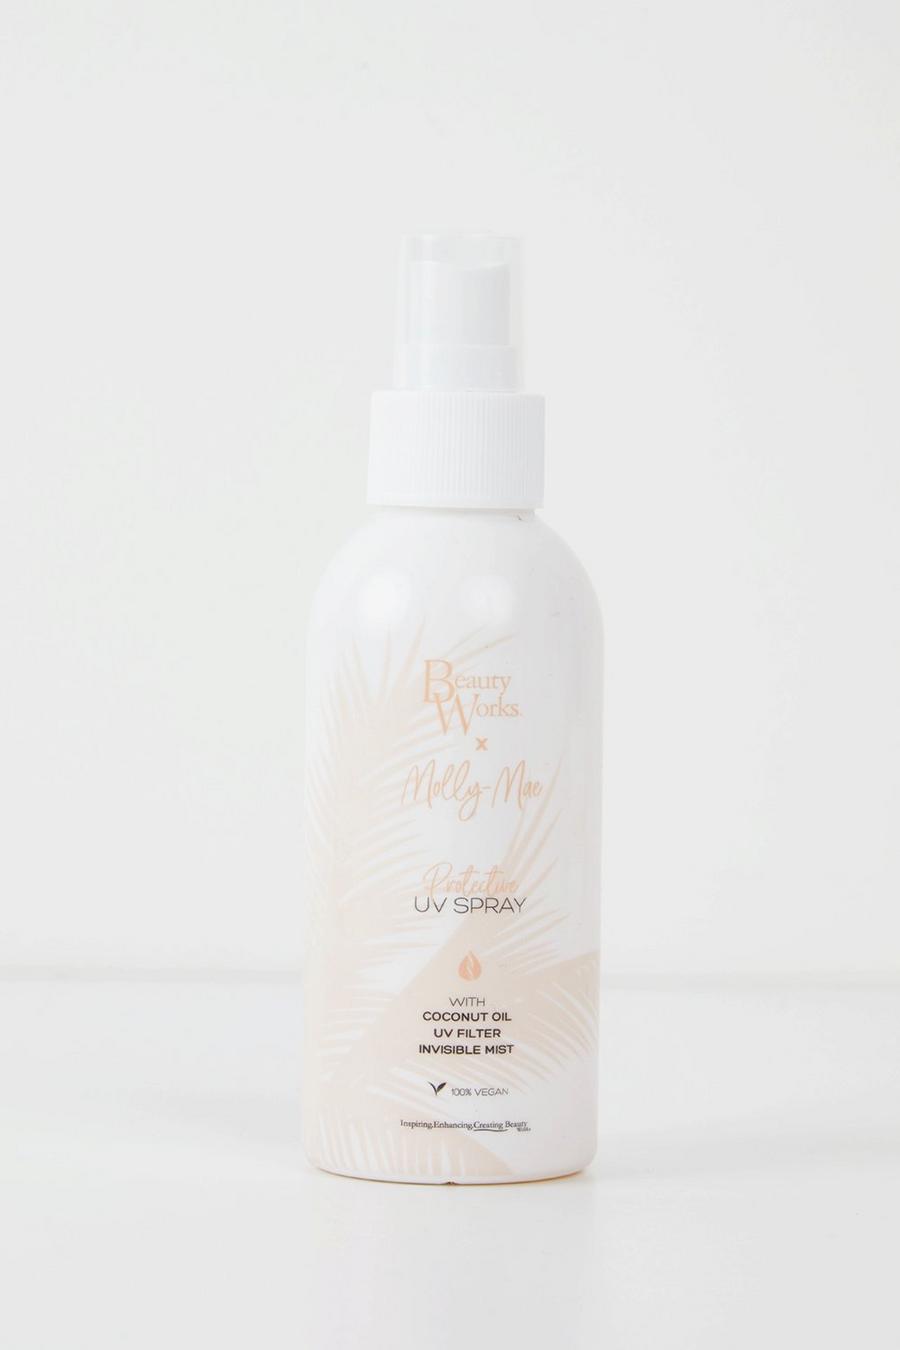 לבן bianco Beauty Works X Molly Mae – תרסיס הגנה על השיער Uv Spray 